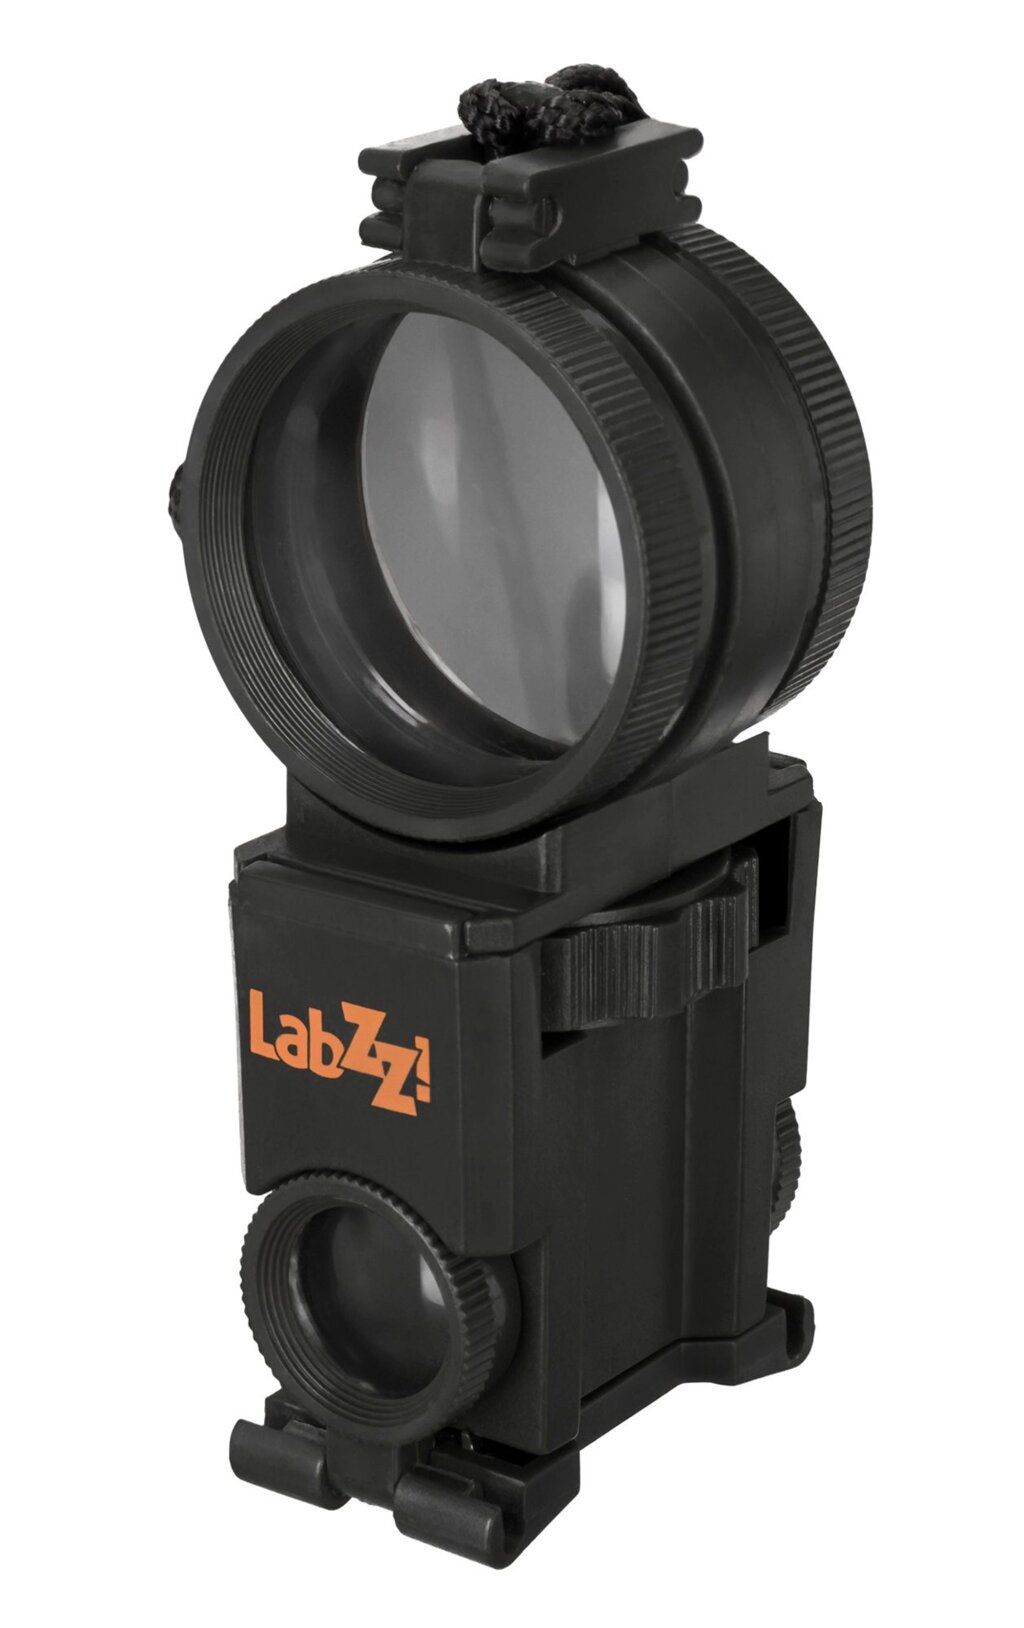 Походный набор Levenhuk LabZZ SK5 Black от компании ООО "АССЕРВИС" лабораторное оборудование и весы по низким ценам. - фото 1